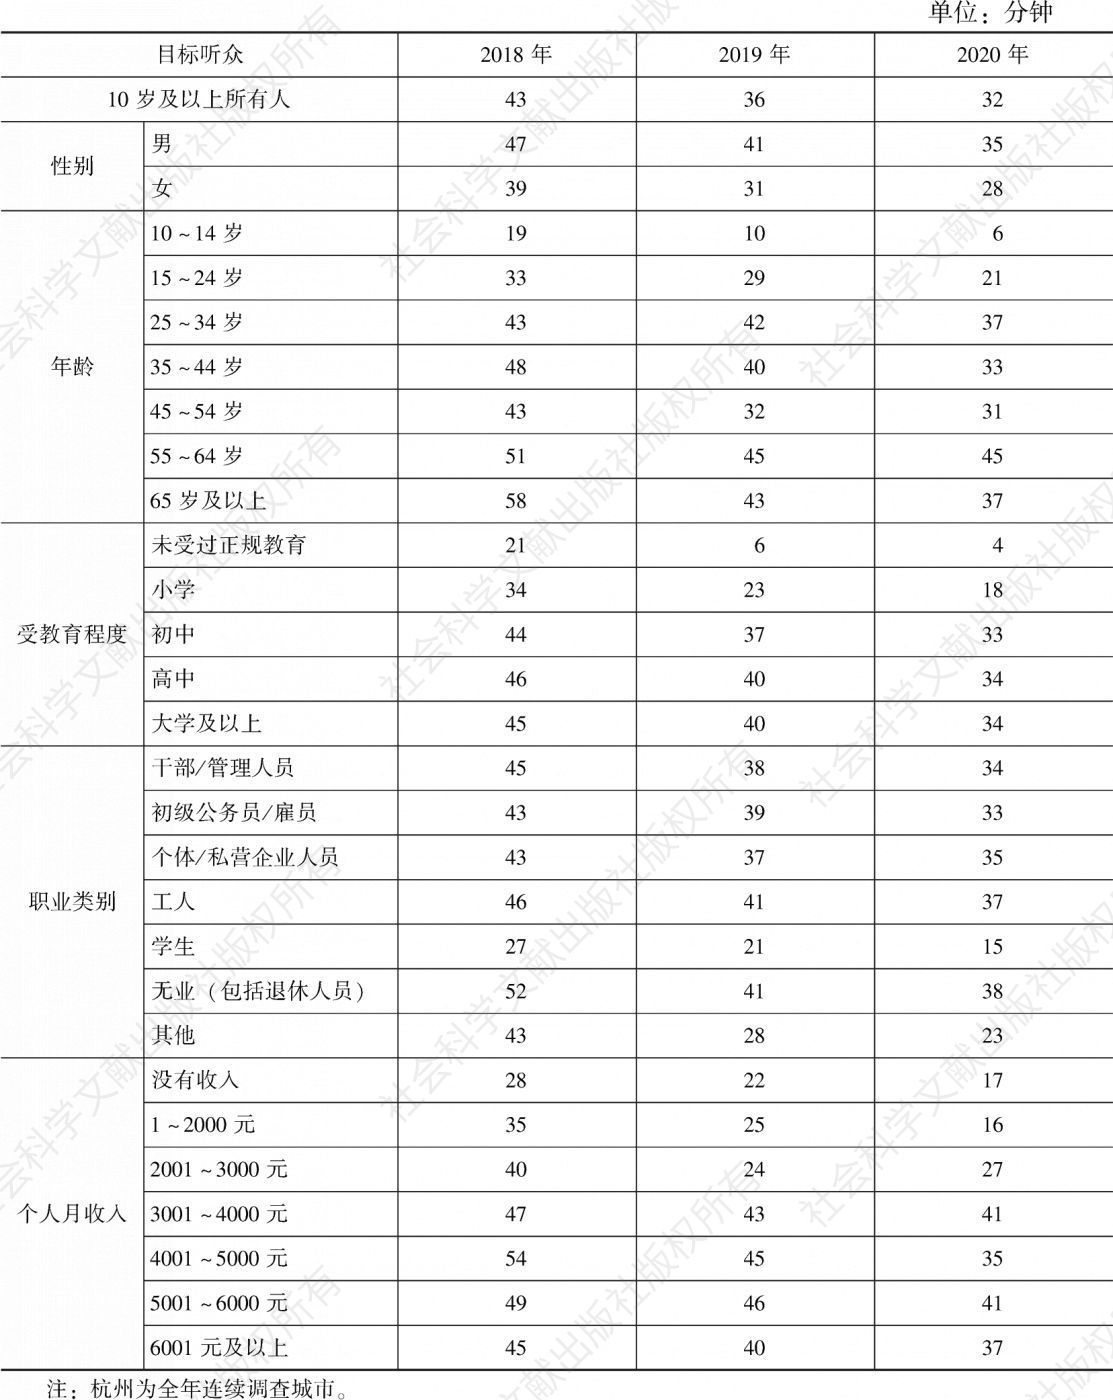 表4.8.1 2018～2020年杭州各目标听众人均收听时间